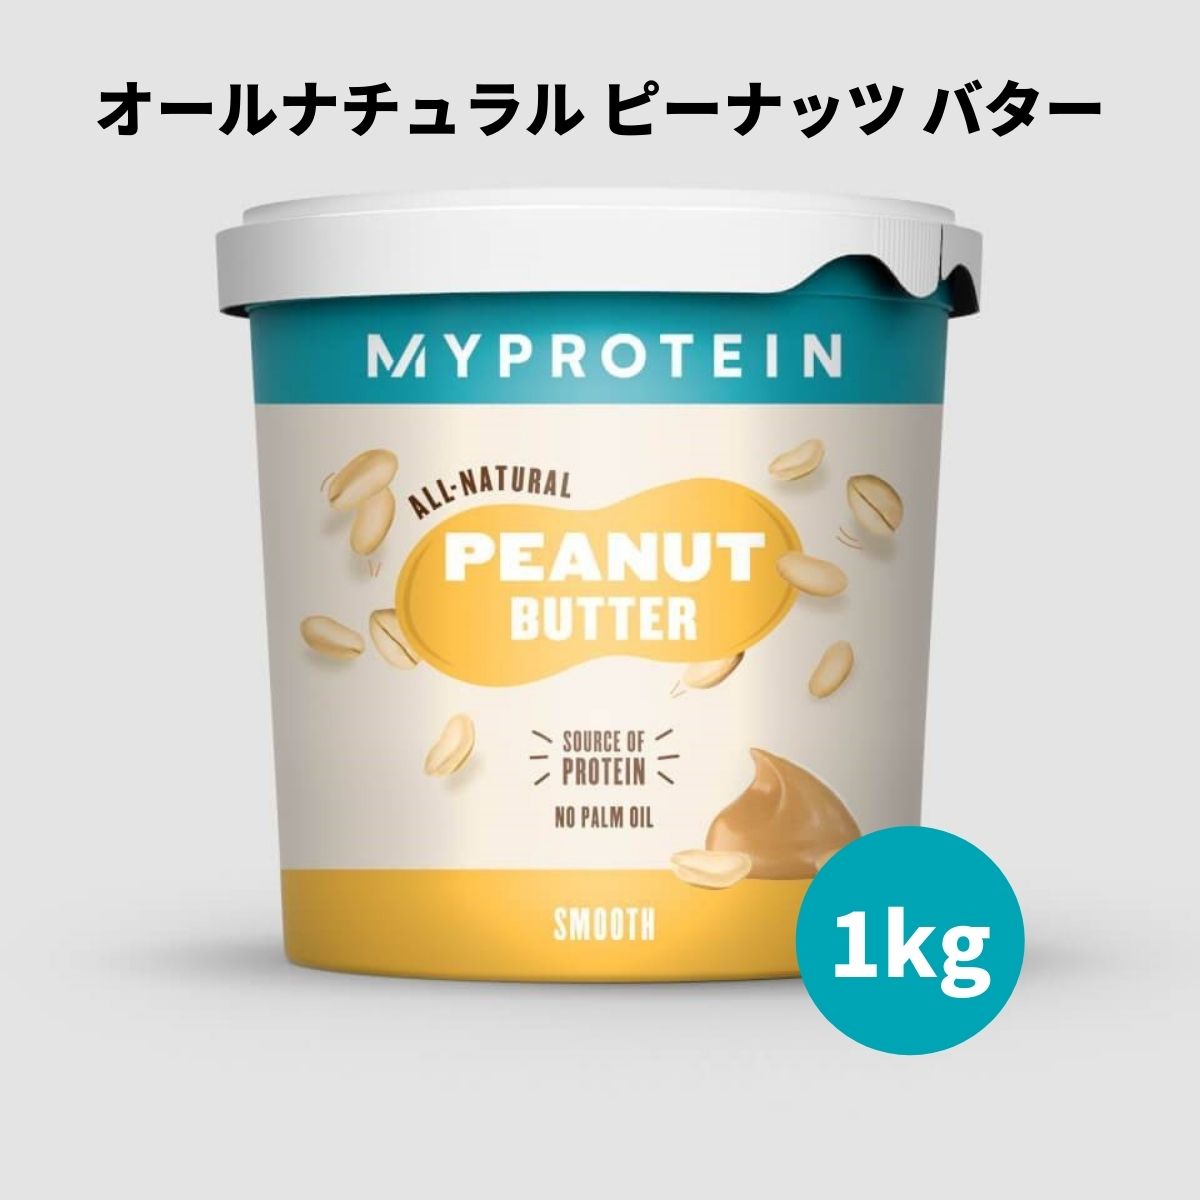 マイプロテイン オールナチュラル ピーナッツバター 1kg 【Myprotein】【楽天海外通販】 マイプロテイン 